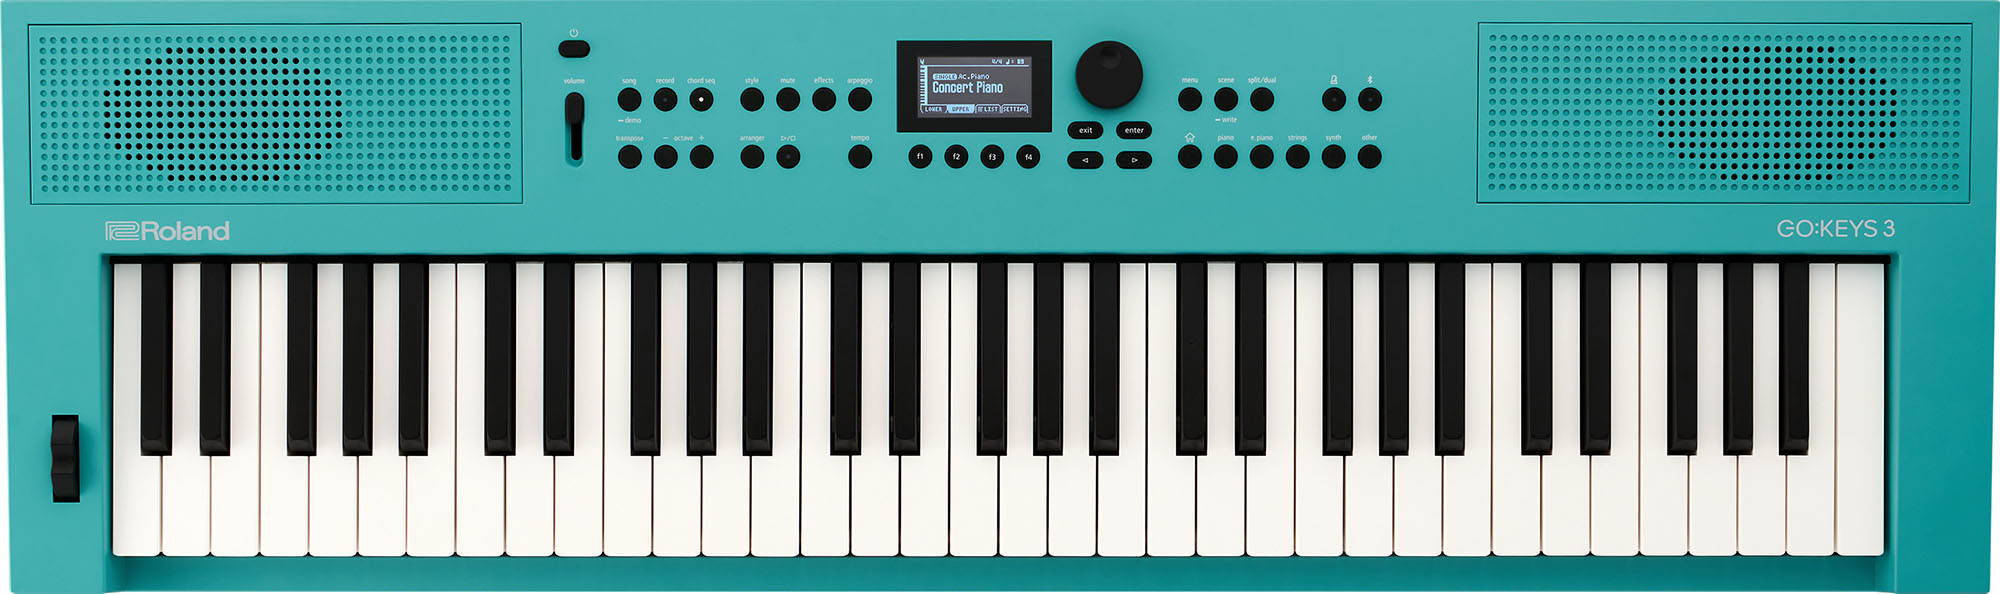 Billede af Roland GO:KEYS 3 Keyboard (Turquoise)